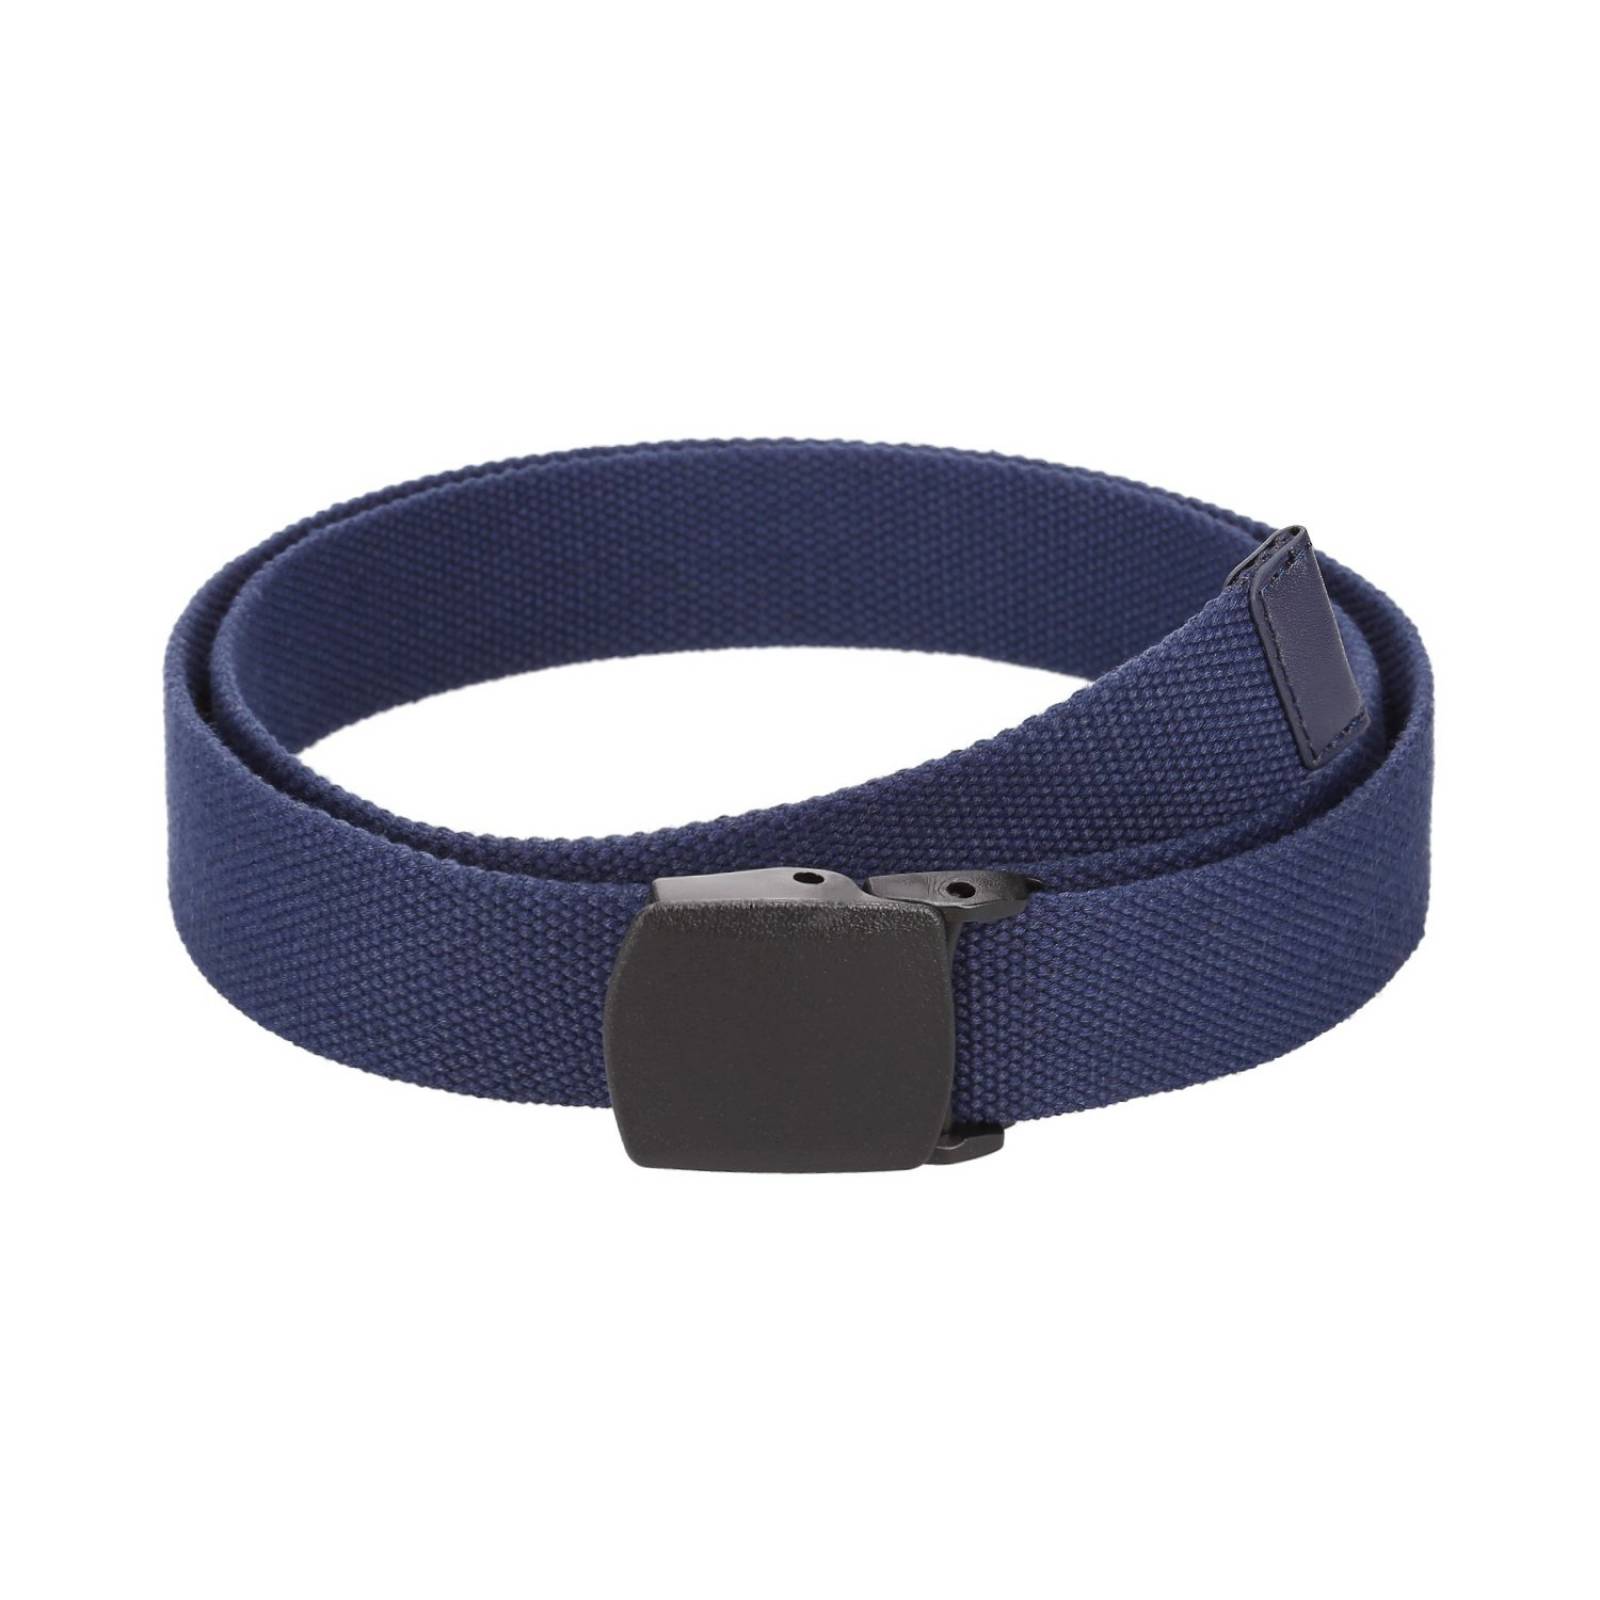 Cinturón Textil Poliéster Azul Marino Con Hebilla A Presión Rectangular